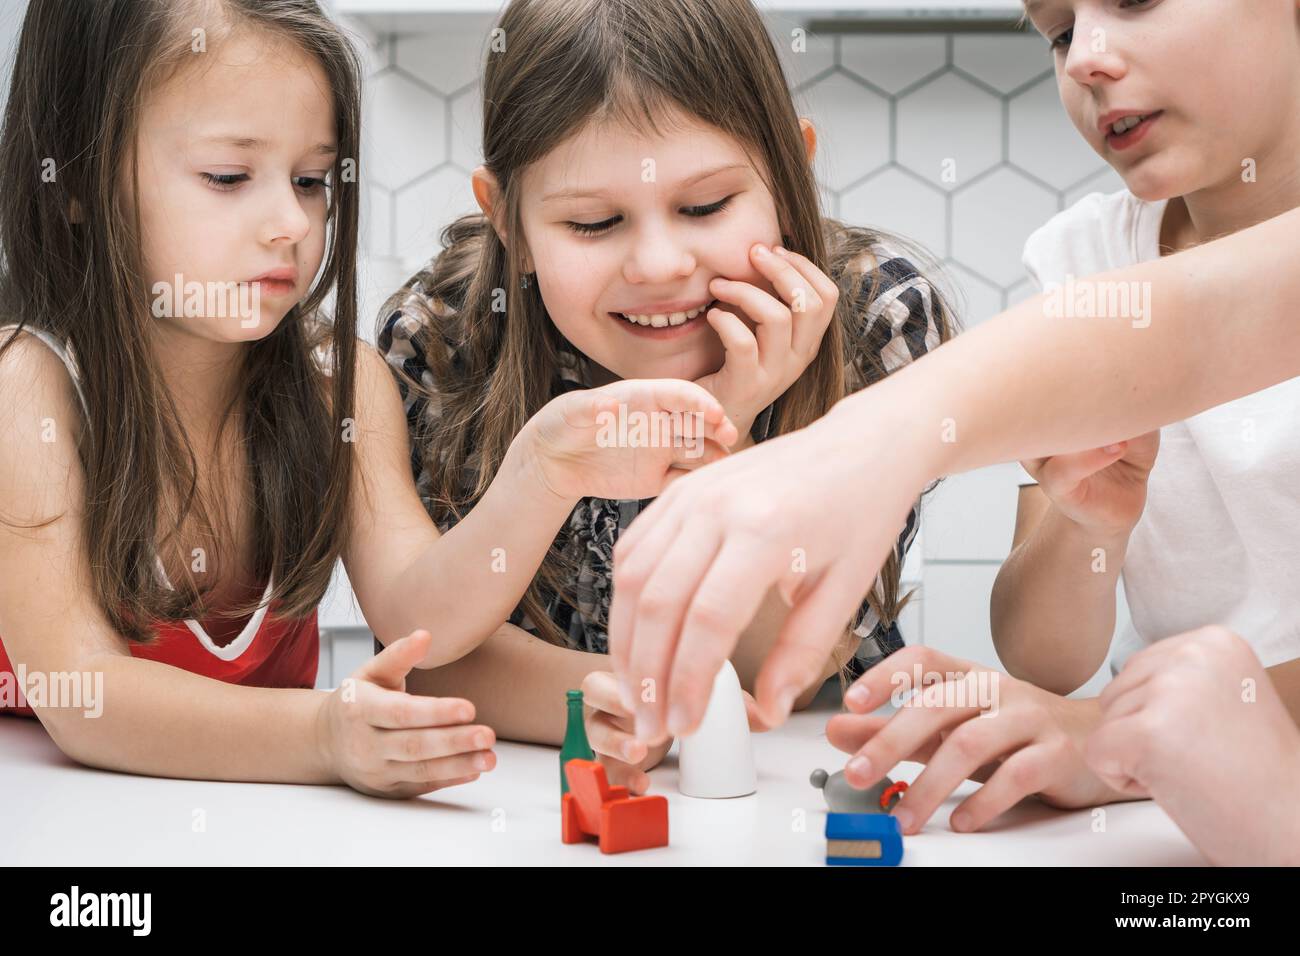 Enfants souriants et concentrés jouant avec des jouets de meubles sur la table blanche. Imagination et jeux créatifs pour les enfants Banque D'Images